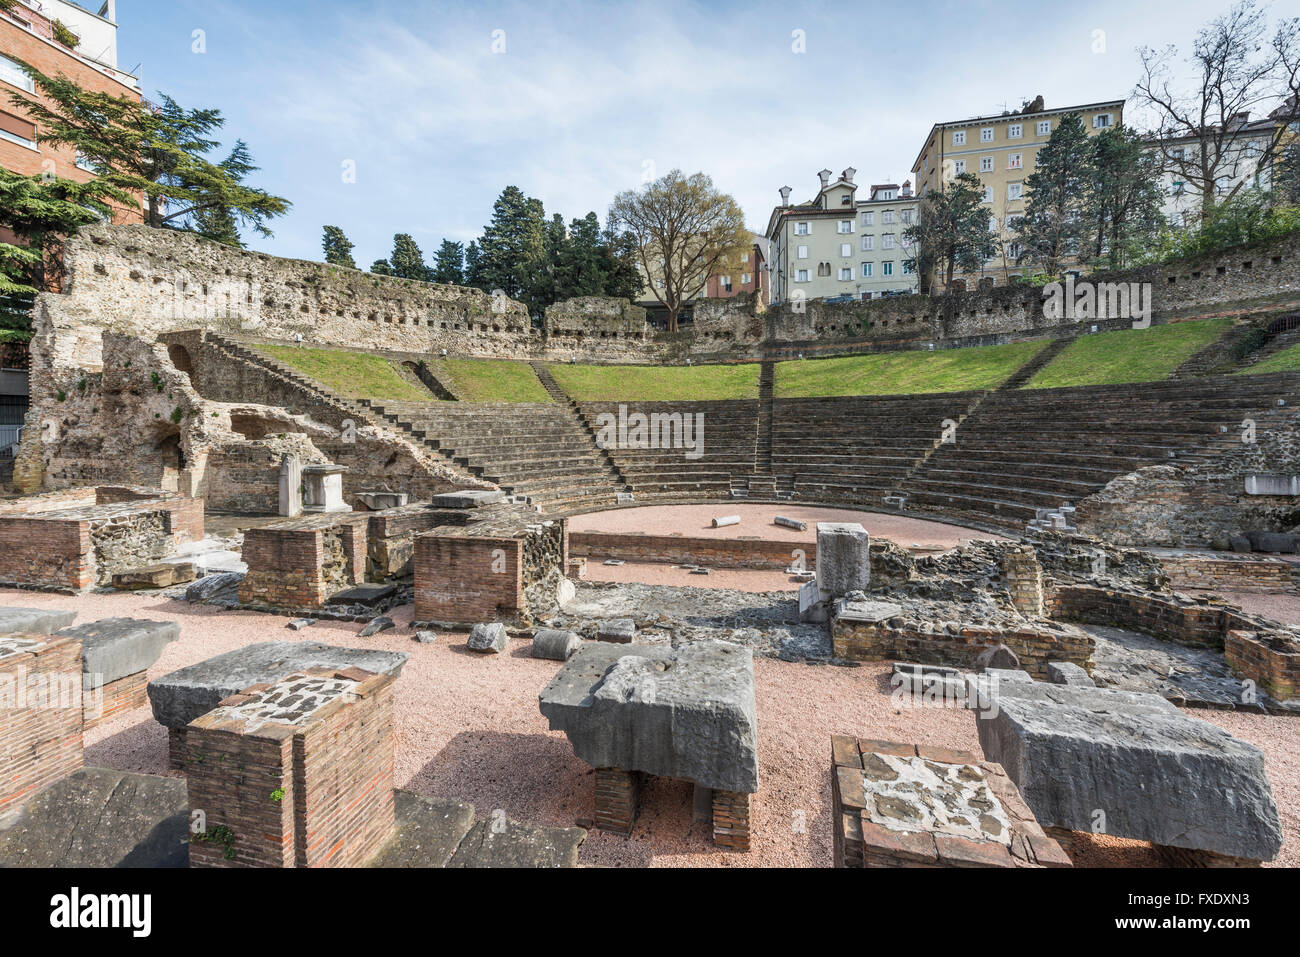 Roman Theatre, venue of the annual Teatro Romano Festival, Trieste, Friuli-Venezia Giulia, Italy Stock Photo